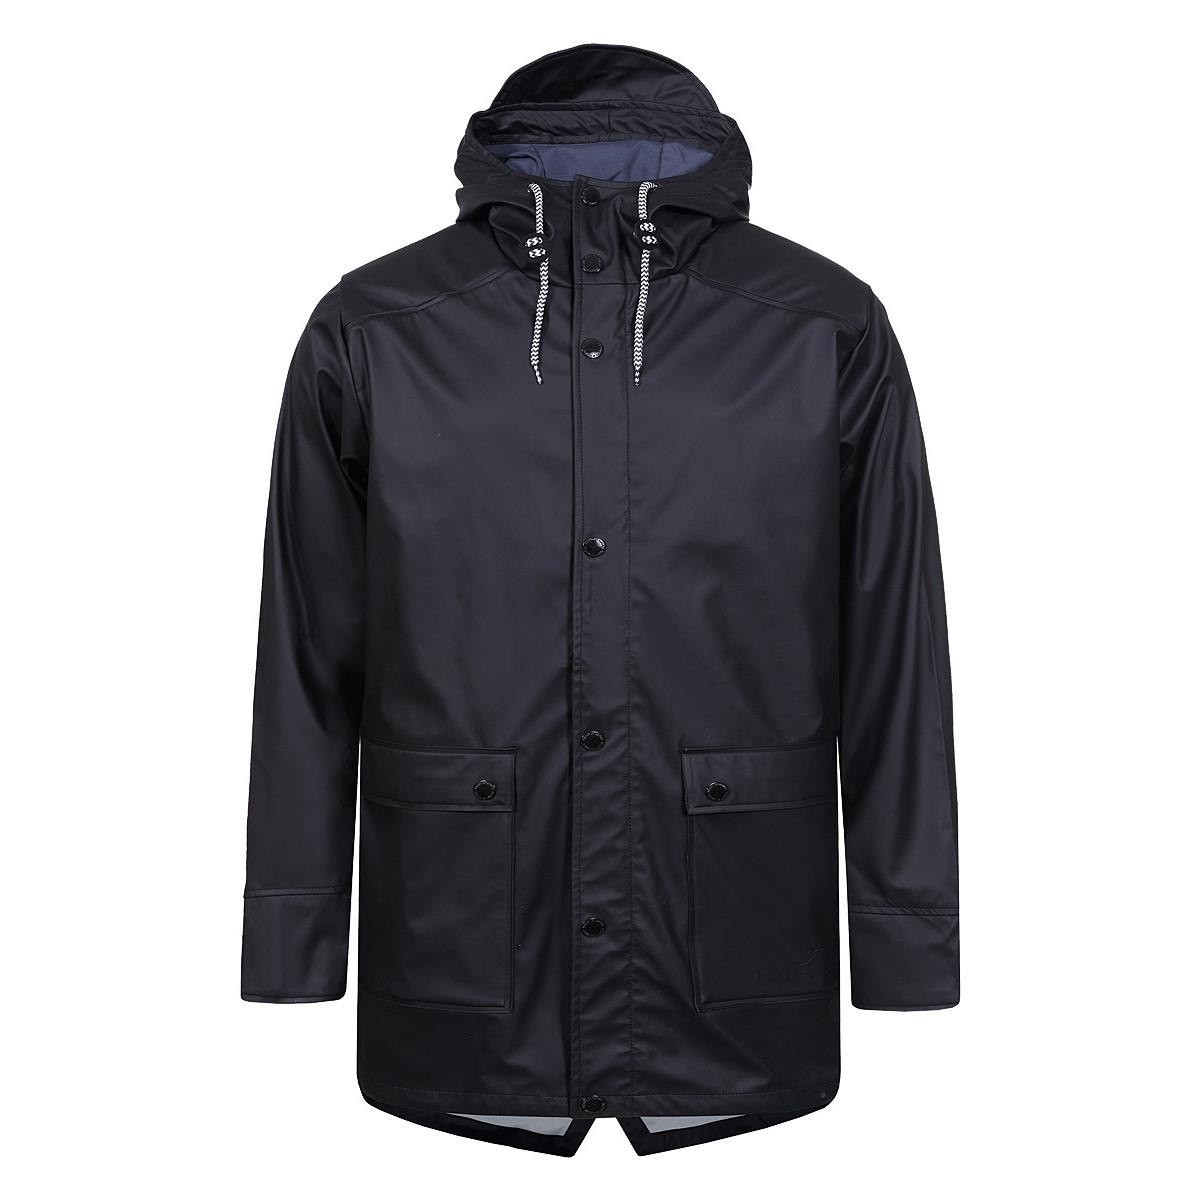 Куртка-дождевик мужская I42-9160J INARI мужская футболка lasting хлопок черная m bmd900m